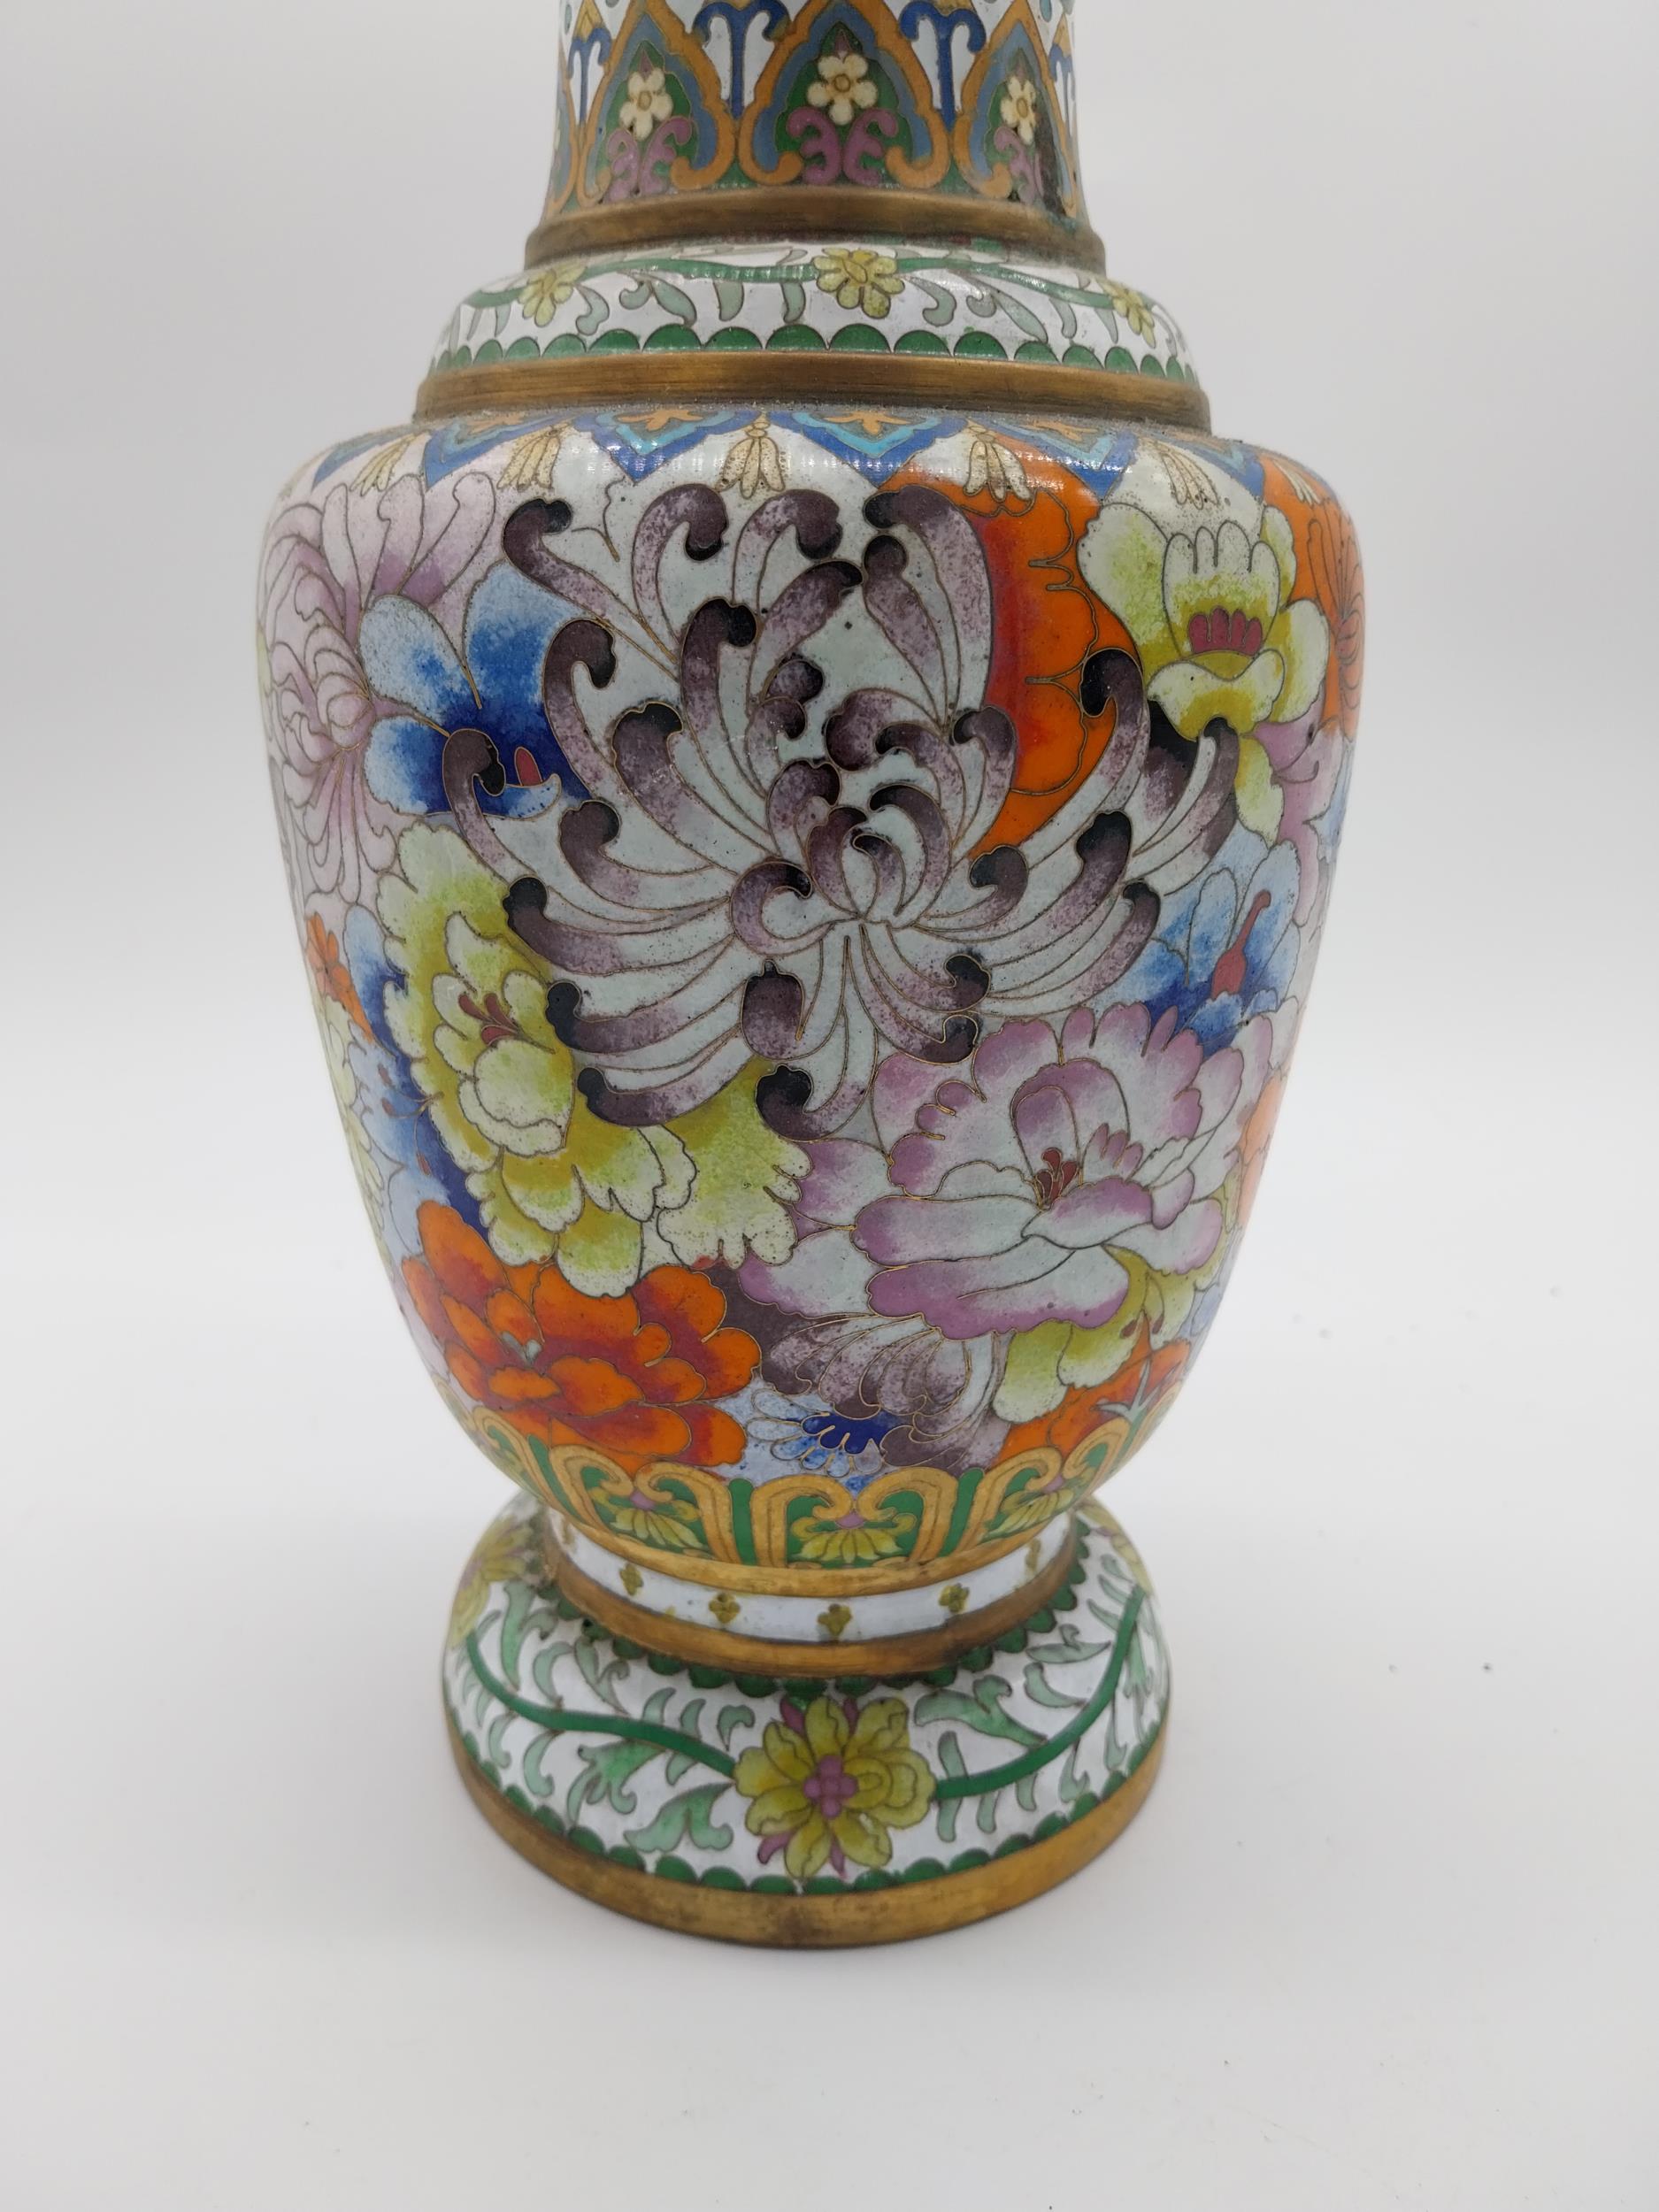 Decorative oriental cloisonne vase. {32 cm H x 15 cm Dia.}. - Image 6 of 6